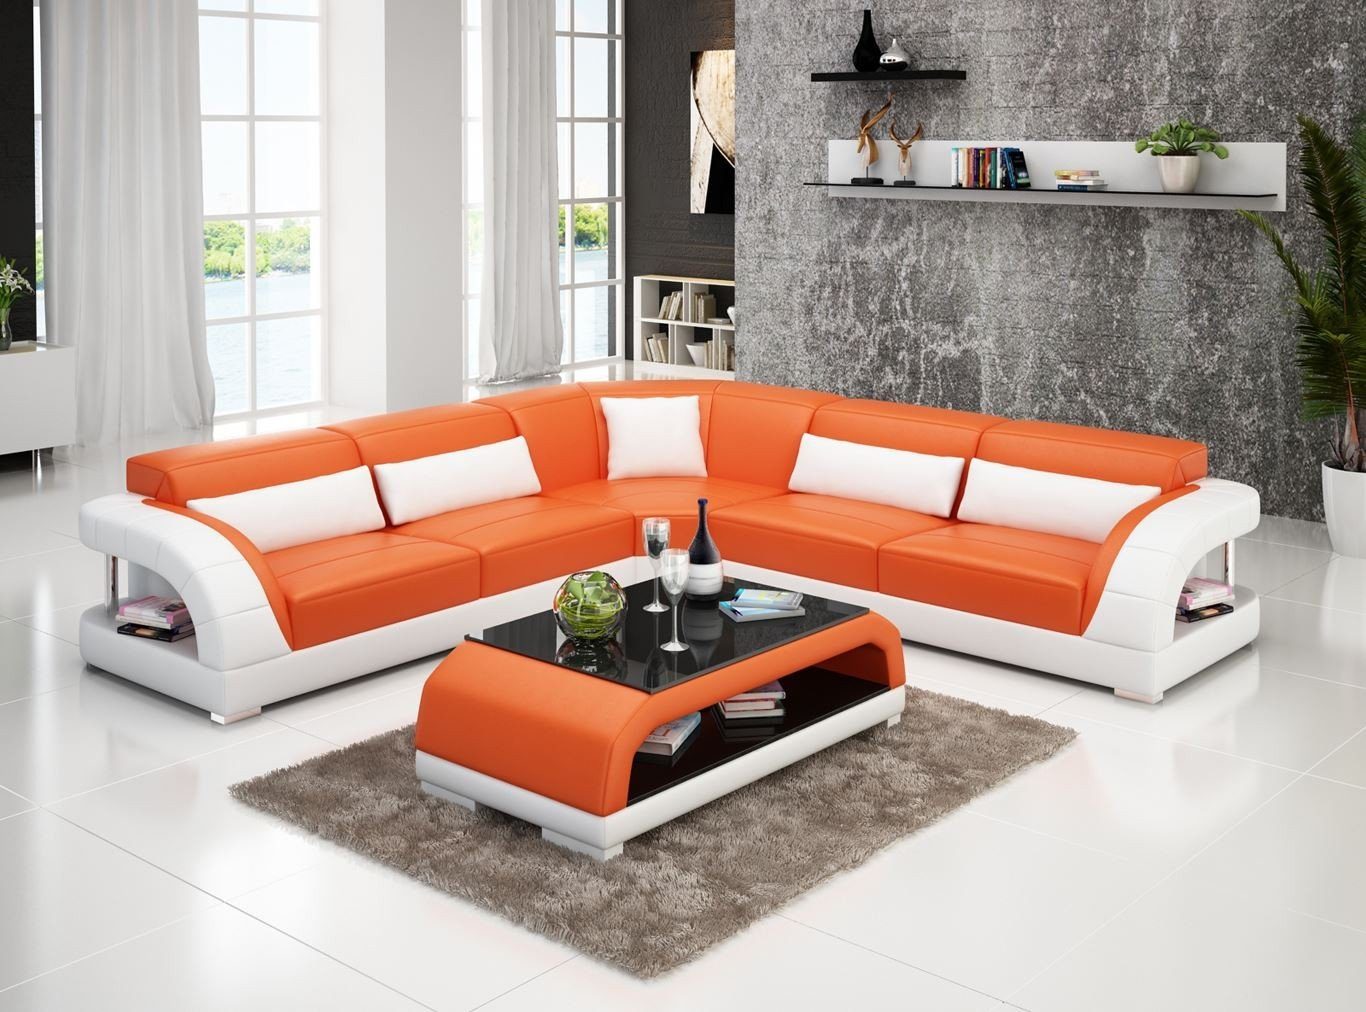 Ecksofa Garnitur JVmoebel Orange/Weiß Made Europe Couch Leder Wohnlandschaft in Design Ecksofa Modern,